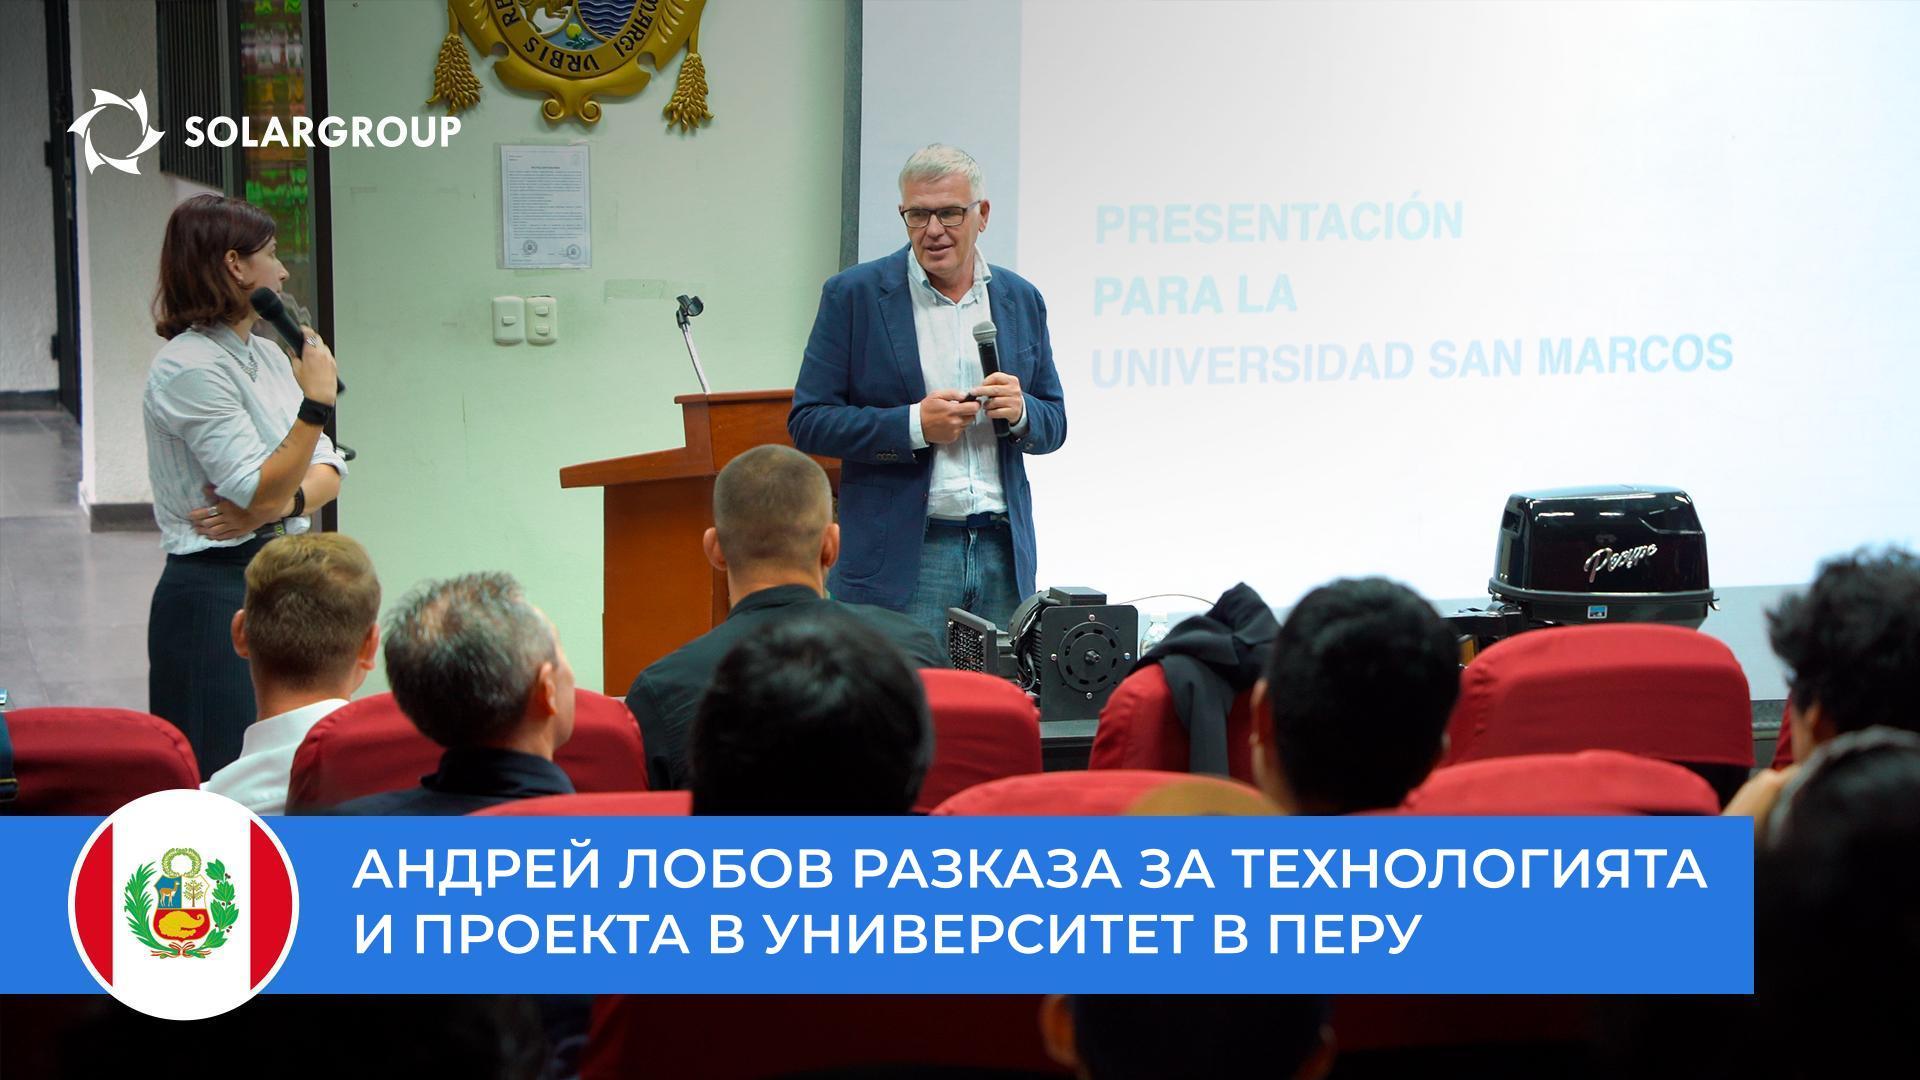 Андрей Лобов разказа за технологията и проекта пред студенти и професори от университета San Marcos